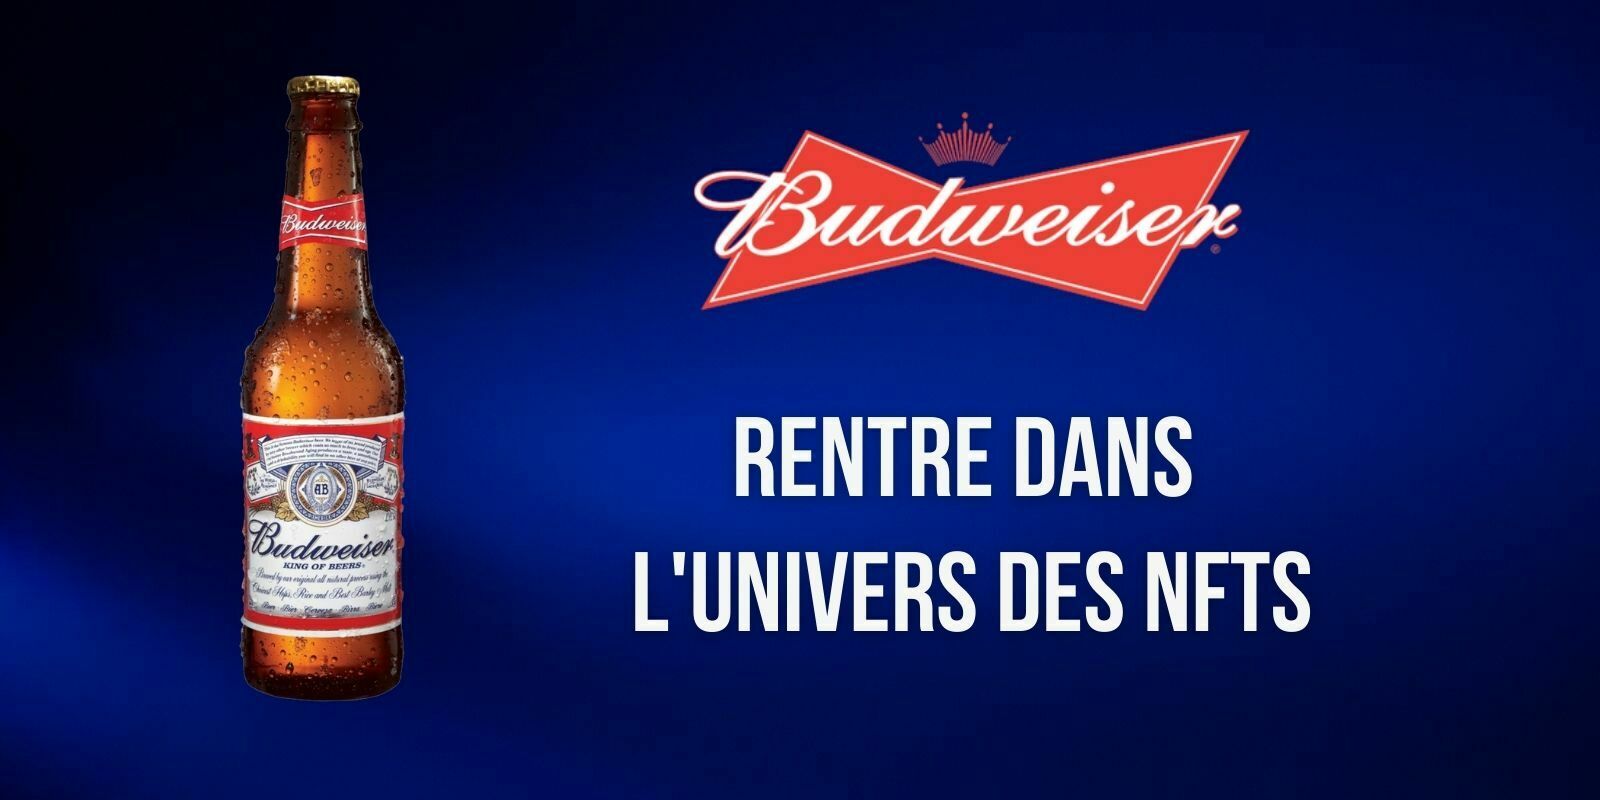 L'entreprise Budweiser achète le nom de domaine Beer.eth pour 30 Ethers (ETH)